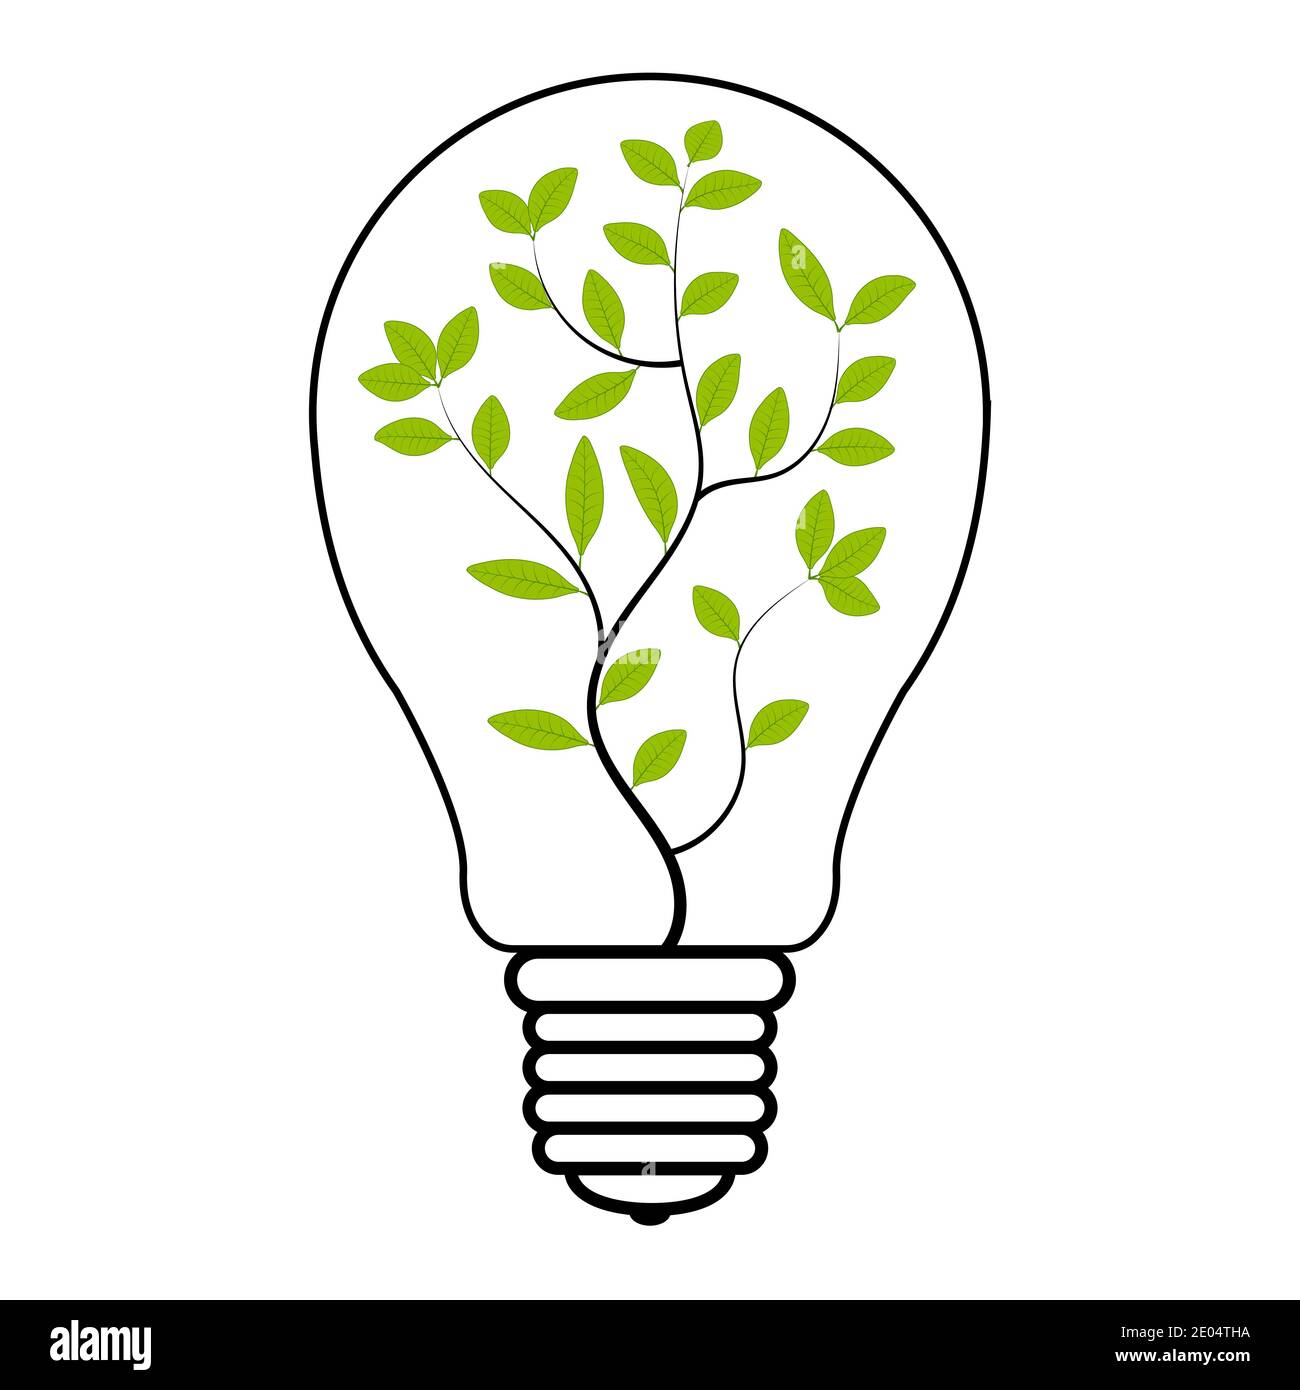 lampada ad albero all'interno, lampada vettoriale con pianta verde simbolo di risparmio energetico ecologico ed energia rinnovabile, segno verde di elettricità Illustrazione Vettoriale